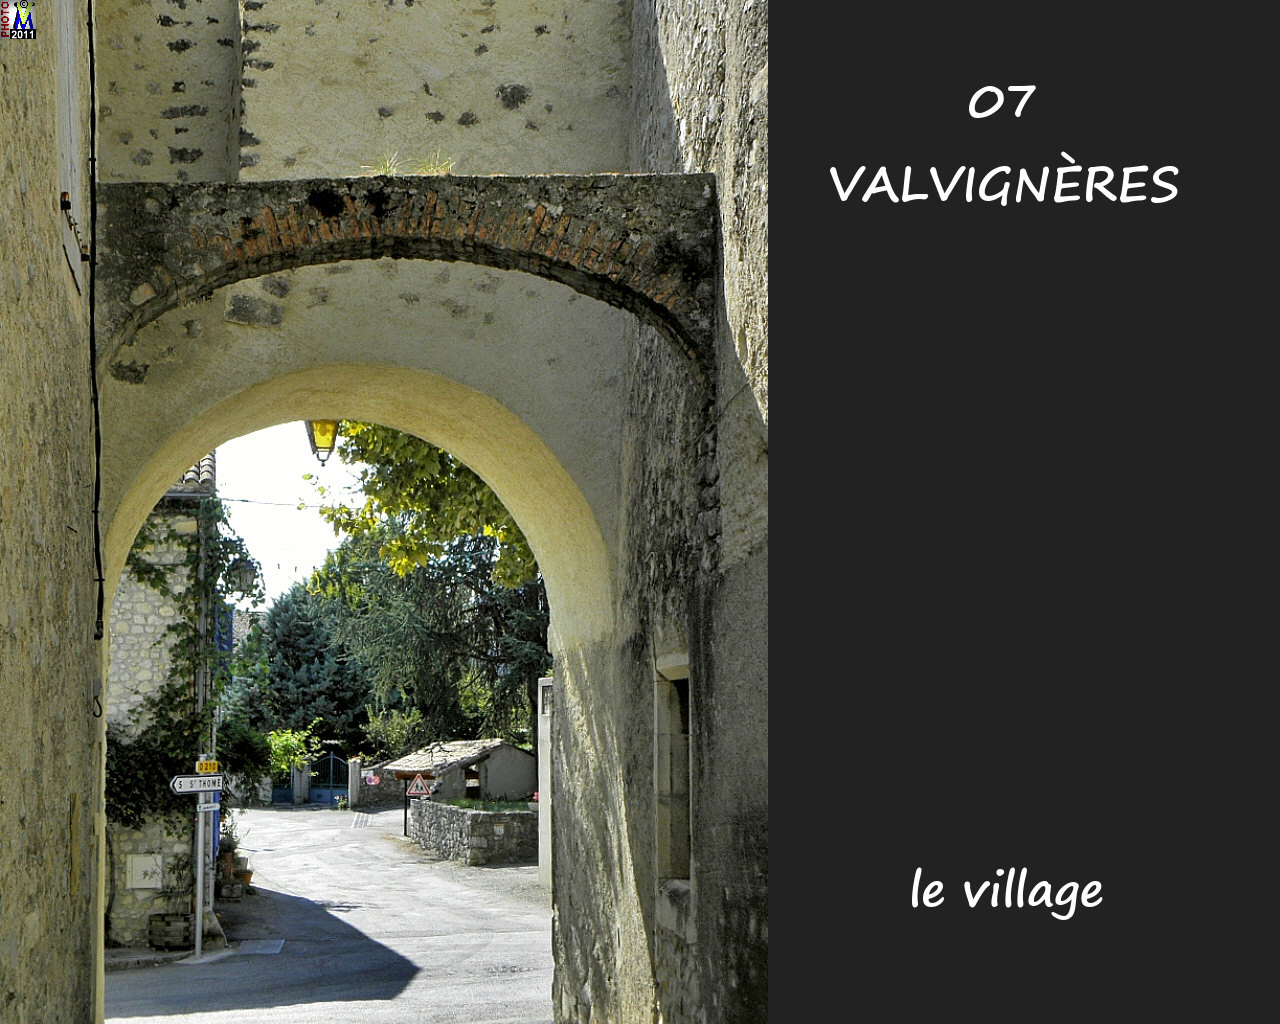 07VALVIGNERES_village_126.jpg